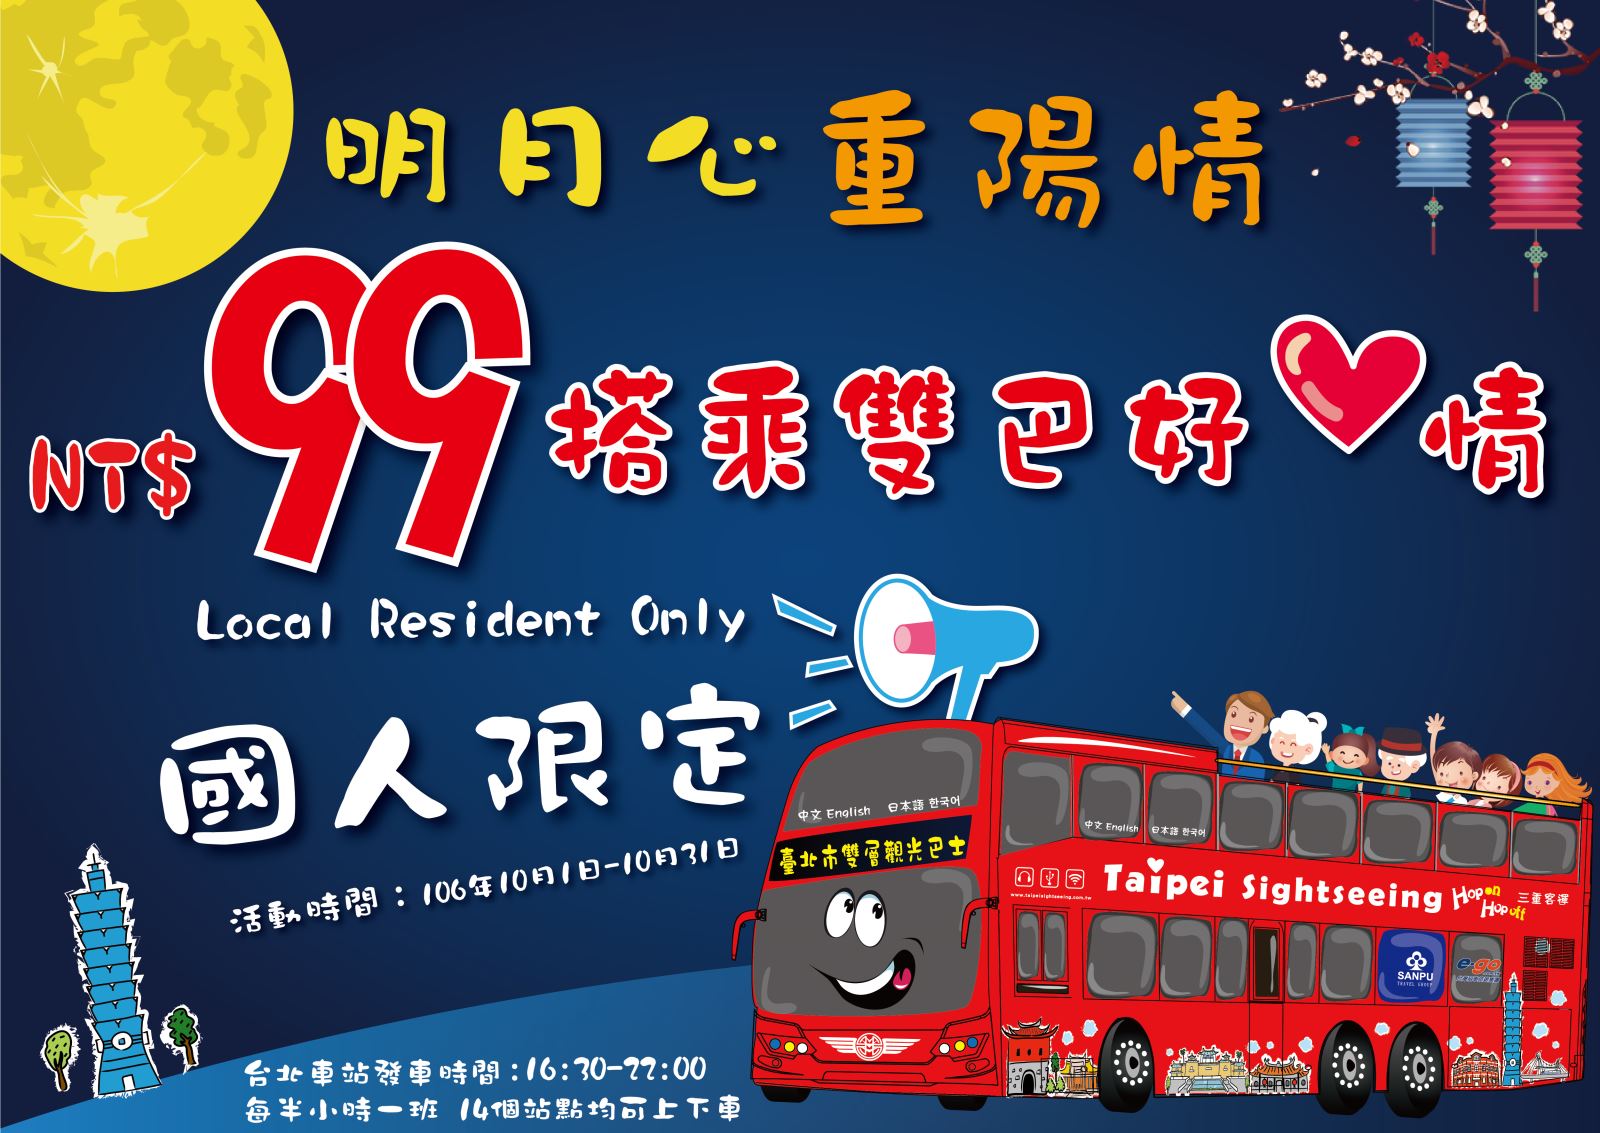 台北市雙層觀光巴士 10 月優惠促銷活動只要 99 元